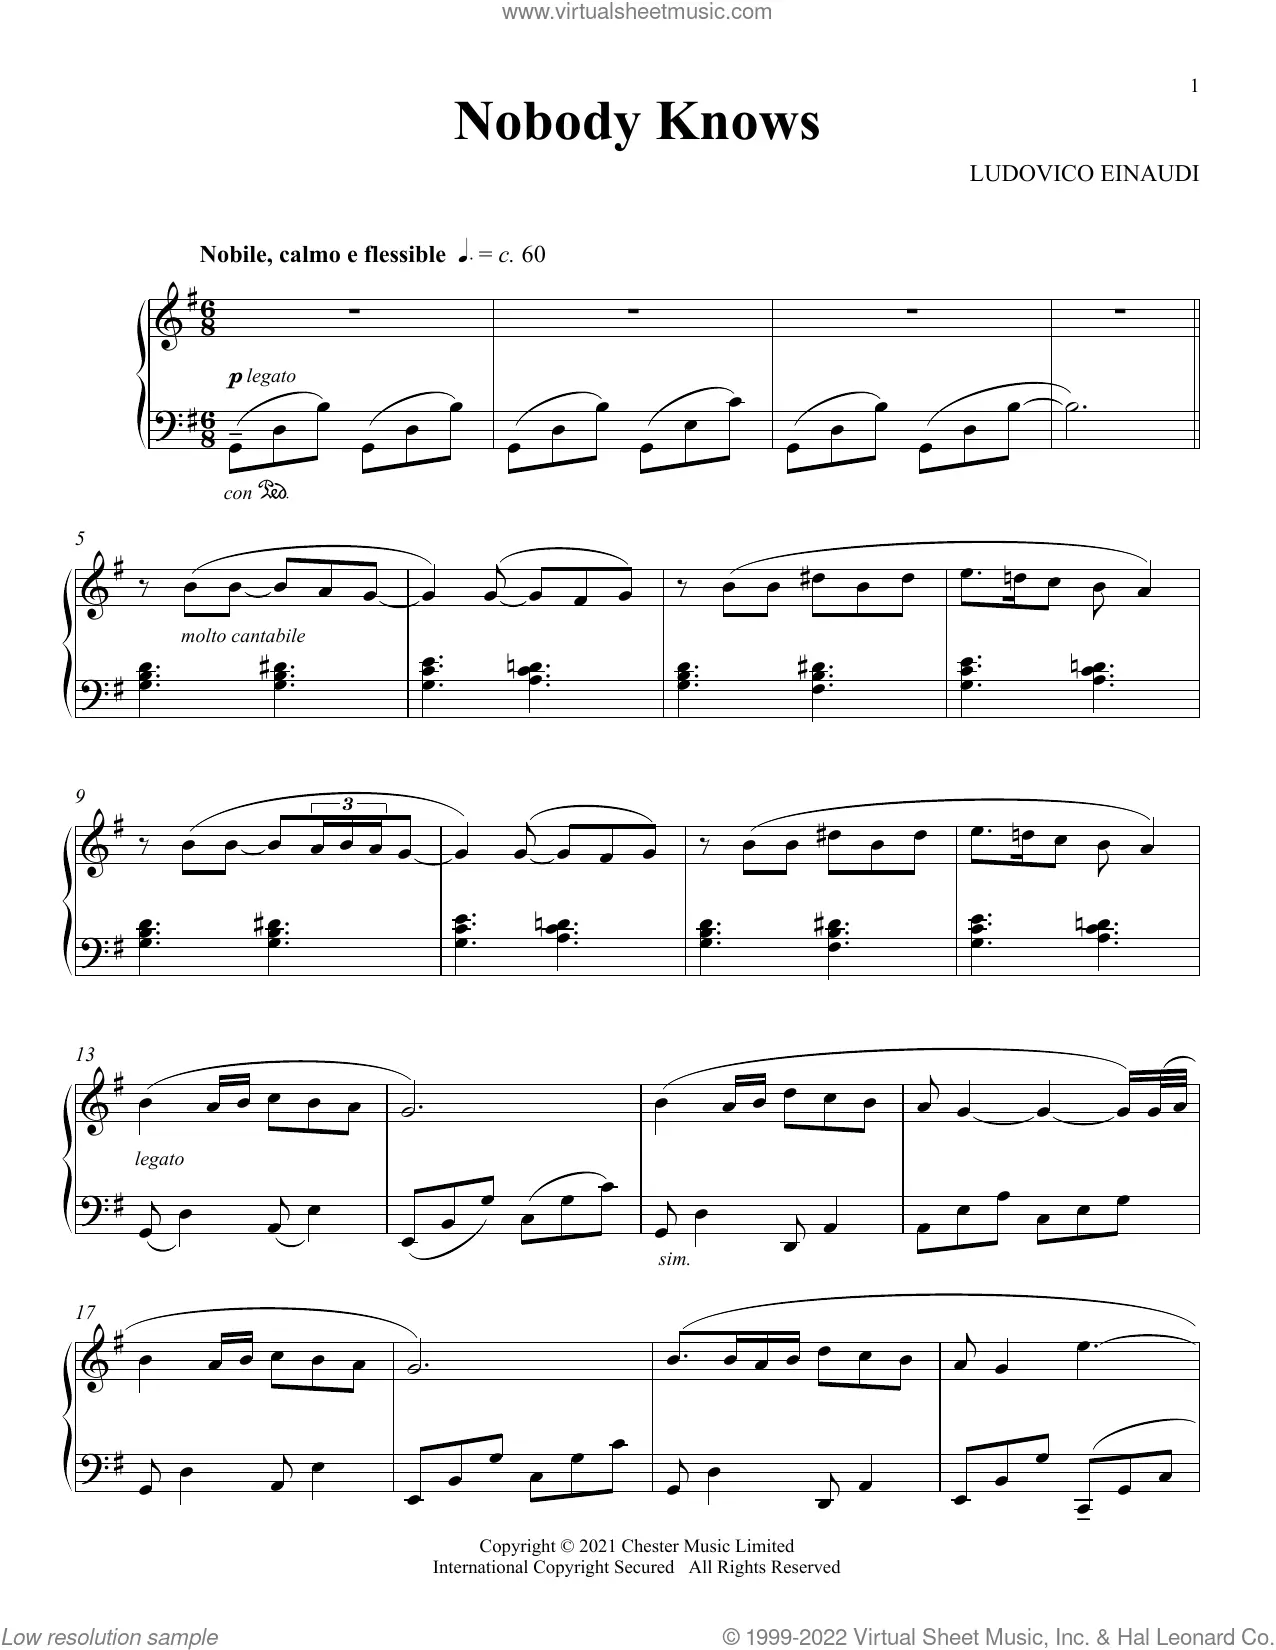 Partition Ludovico Einaudi Andare notes de piano, téléchargement numérique,  PDF imprimable, facile à jouer, feuille de musique PDF imprimable numérique  -  France